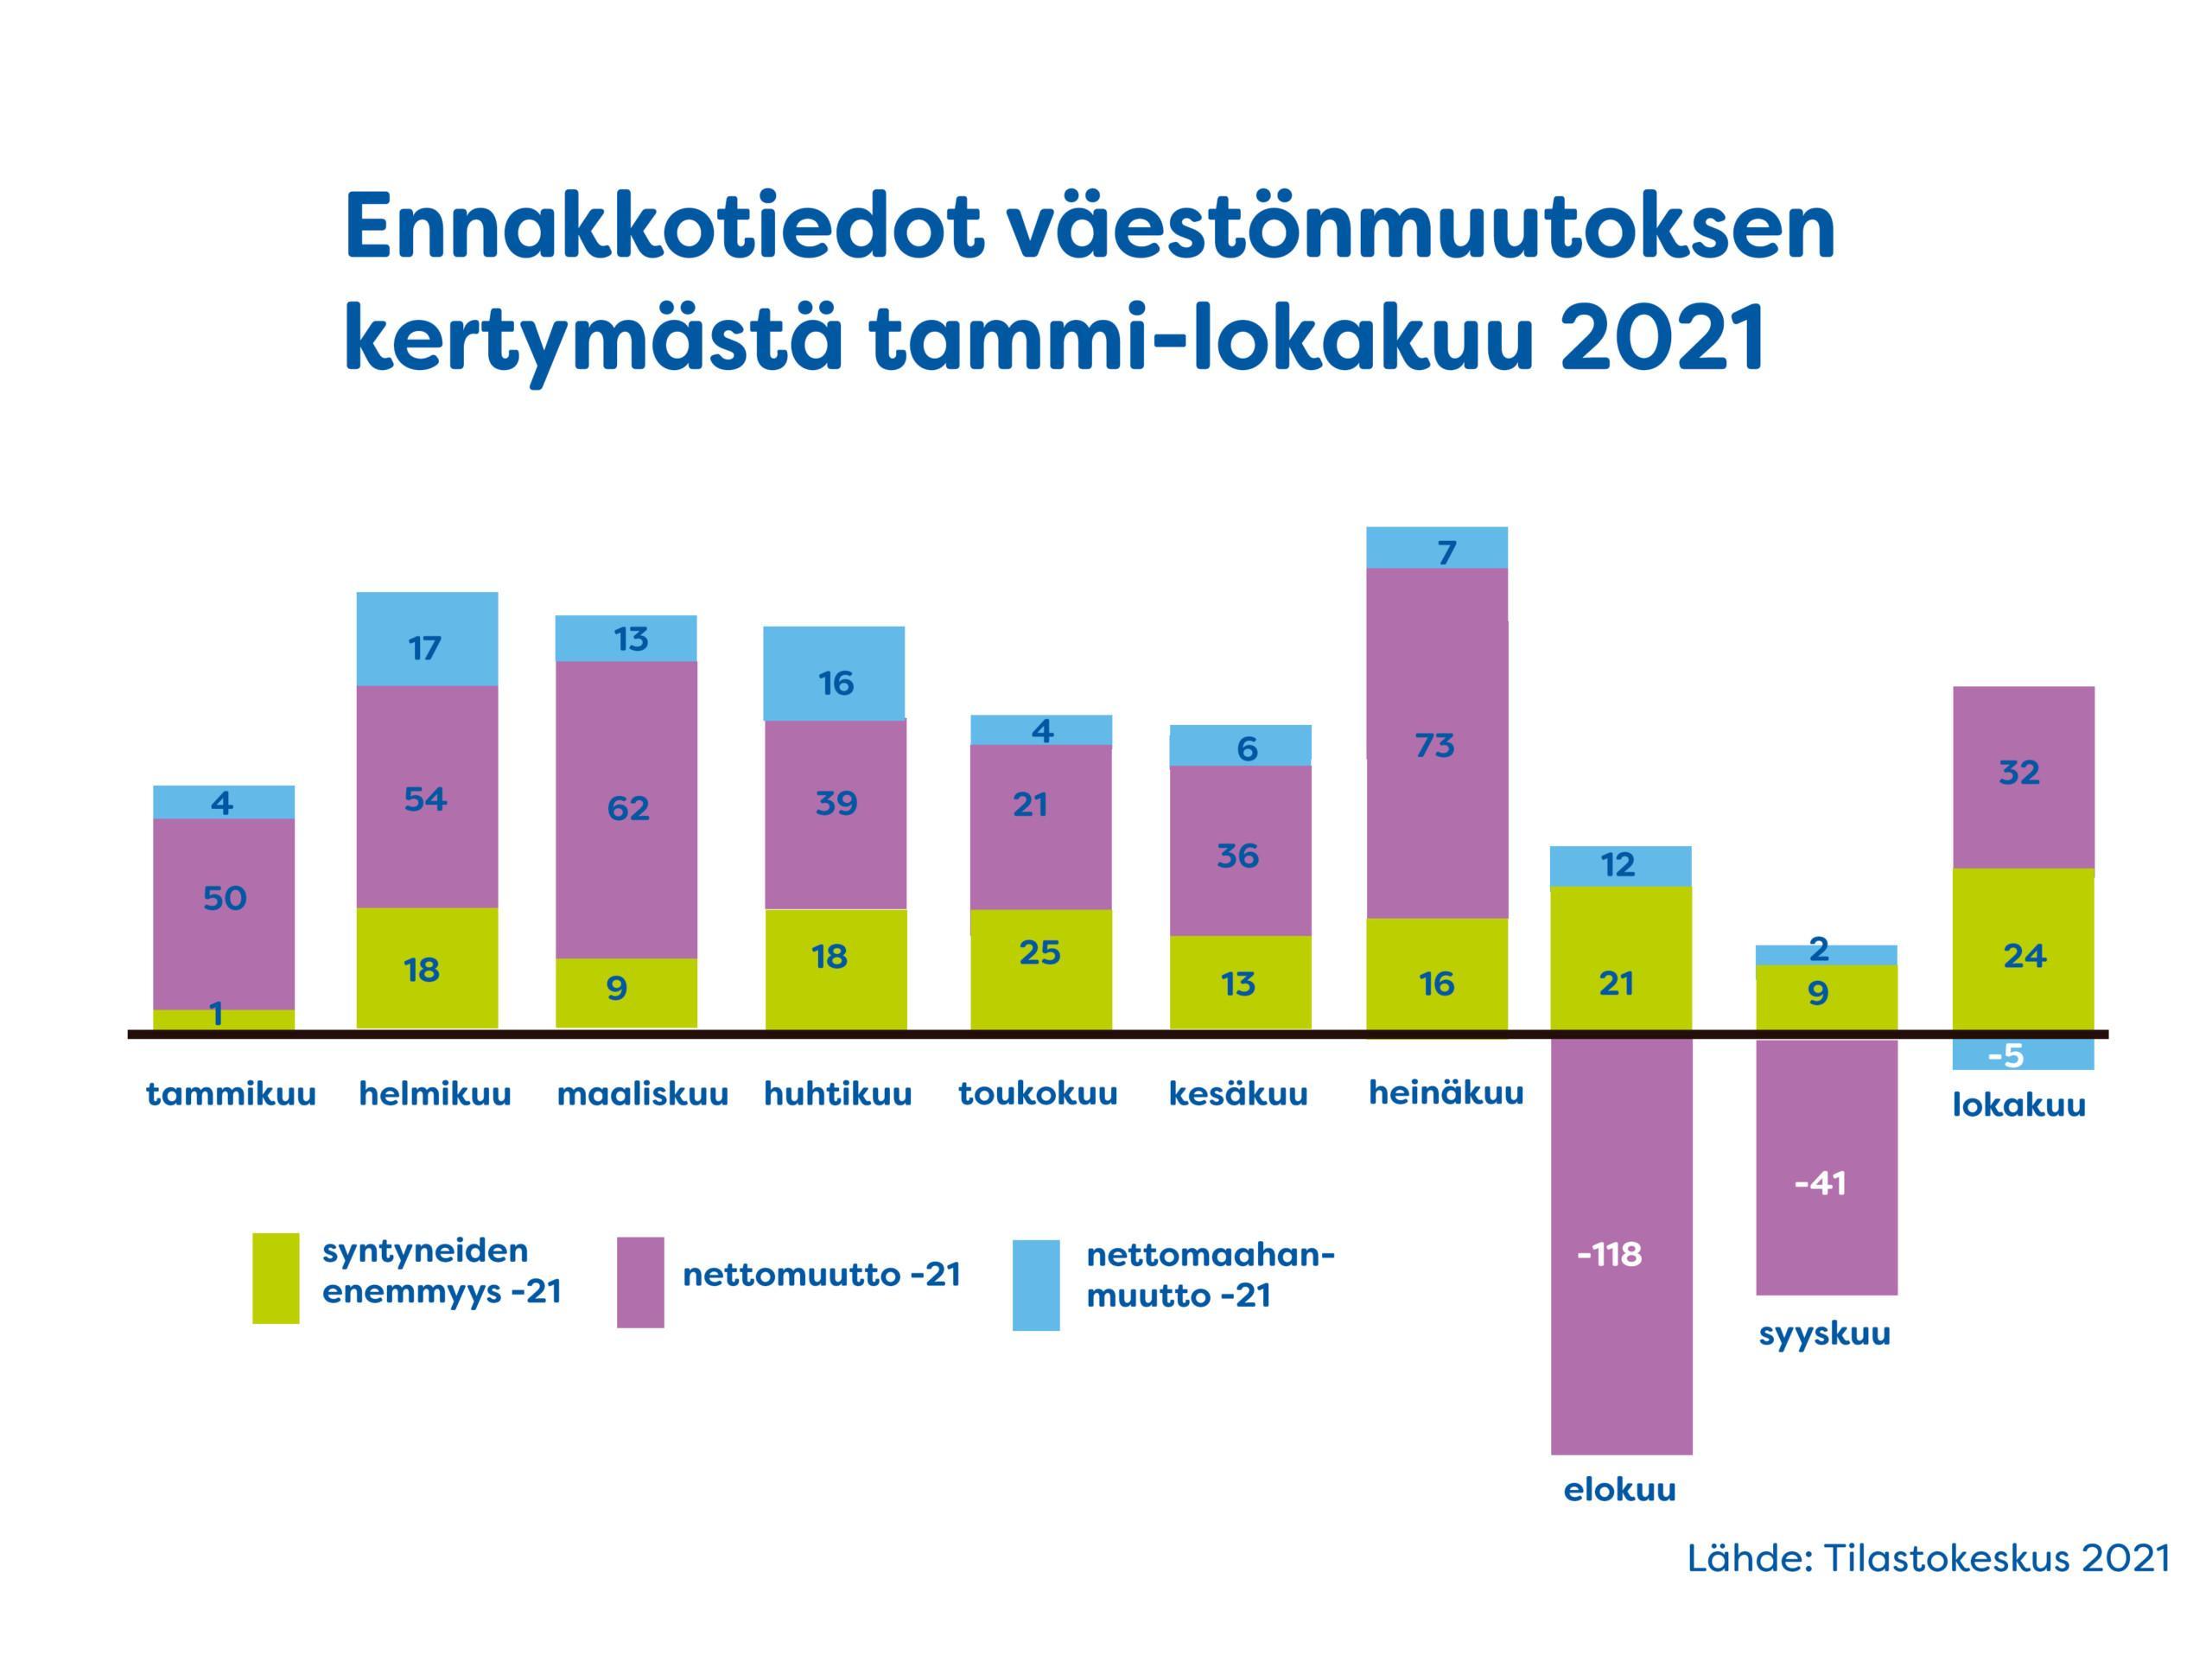 Ennakkotiedot väestönmuutoksen kertymästä Nurmijärvellä tammi-lokakuu 2021